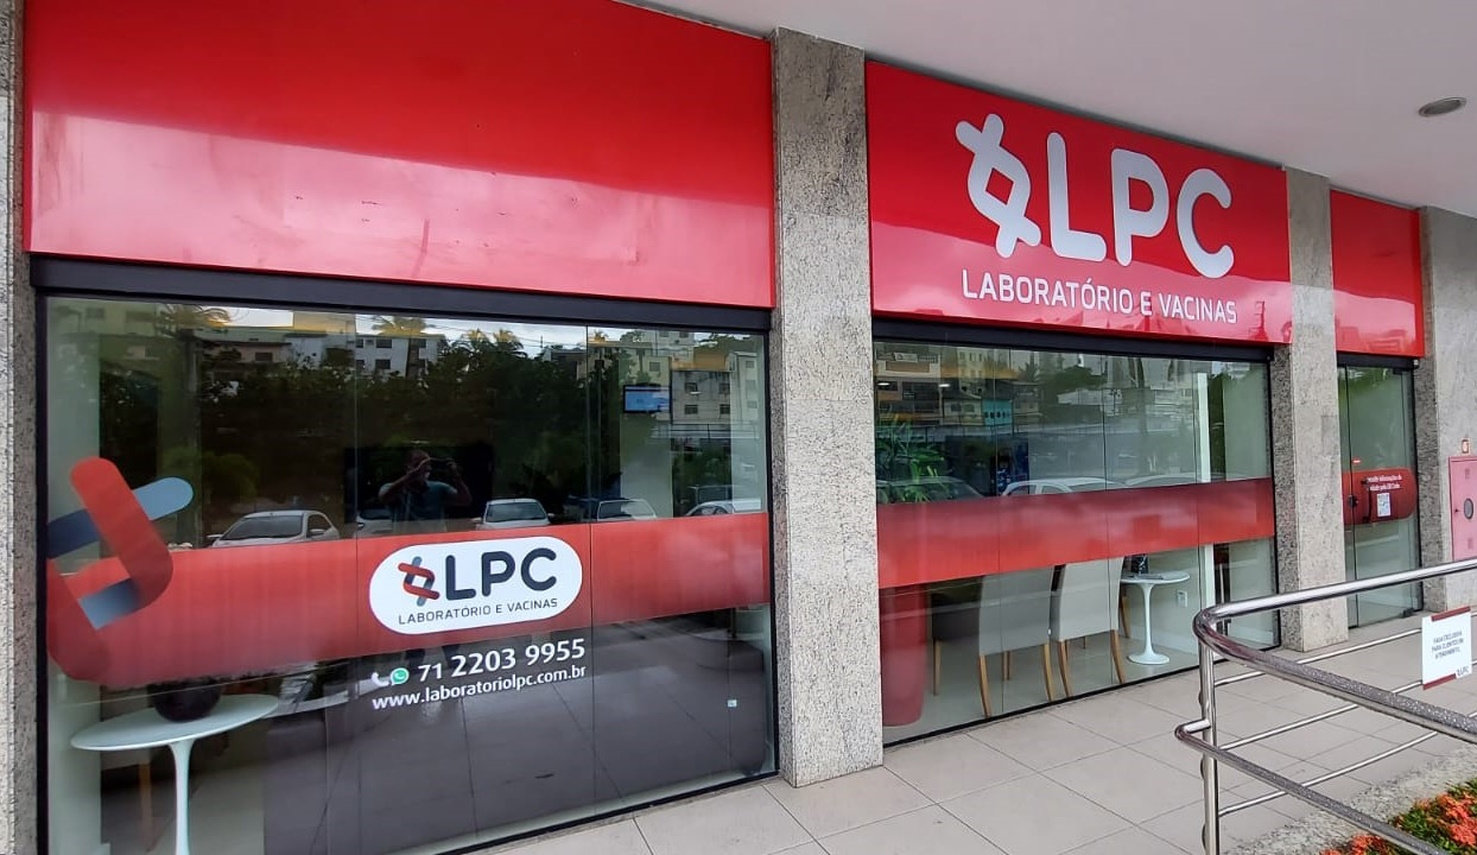 Laboratório LPC abre 14 vagas para Jovem Aprendiz, Assistente Administrativo, Técnico de Atendimento e mais 08 funções